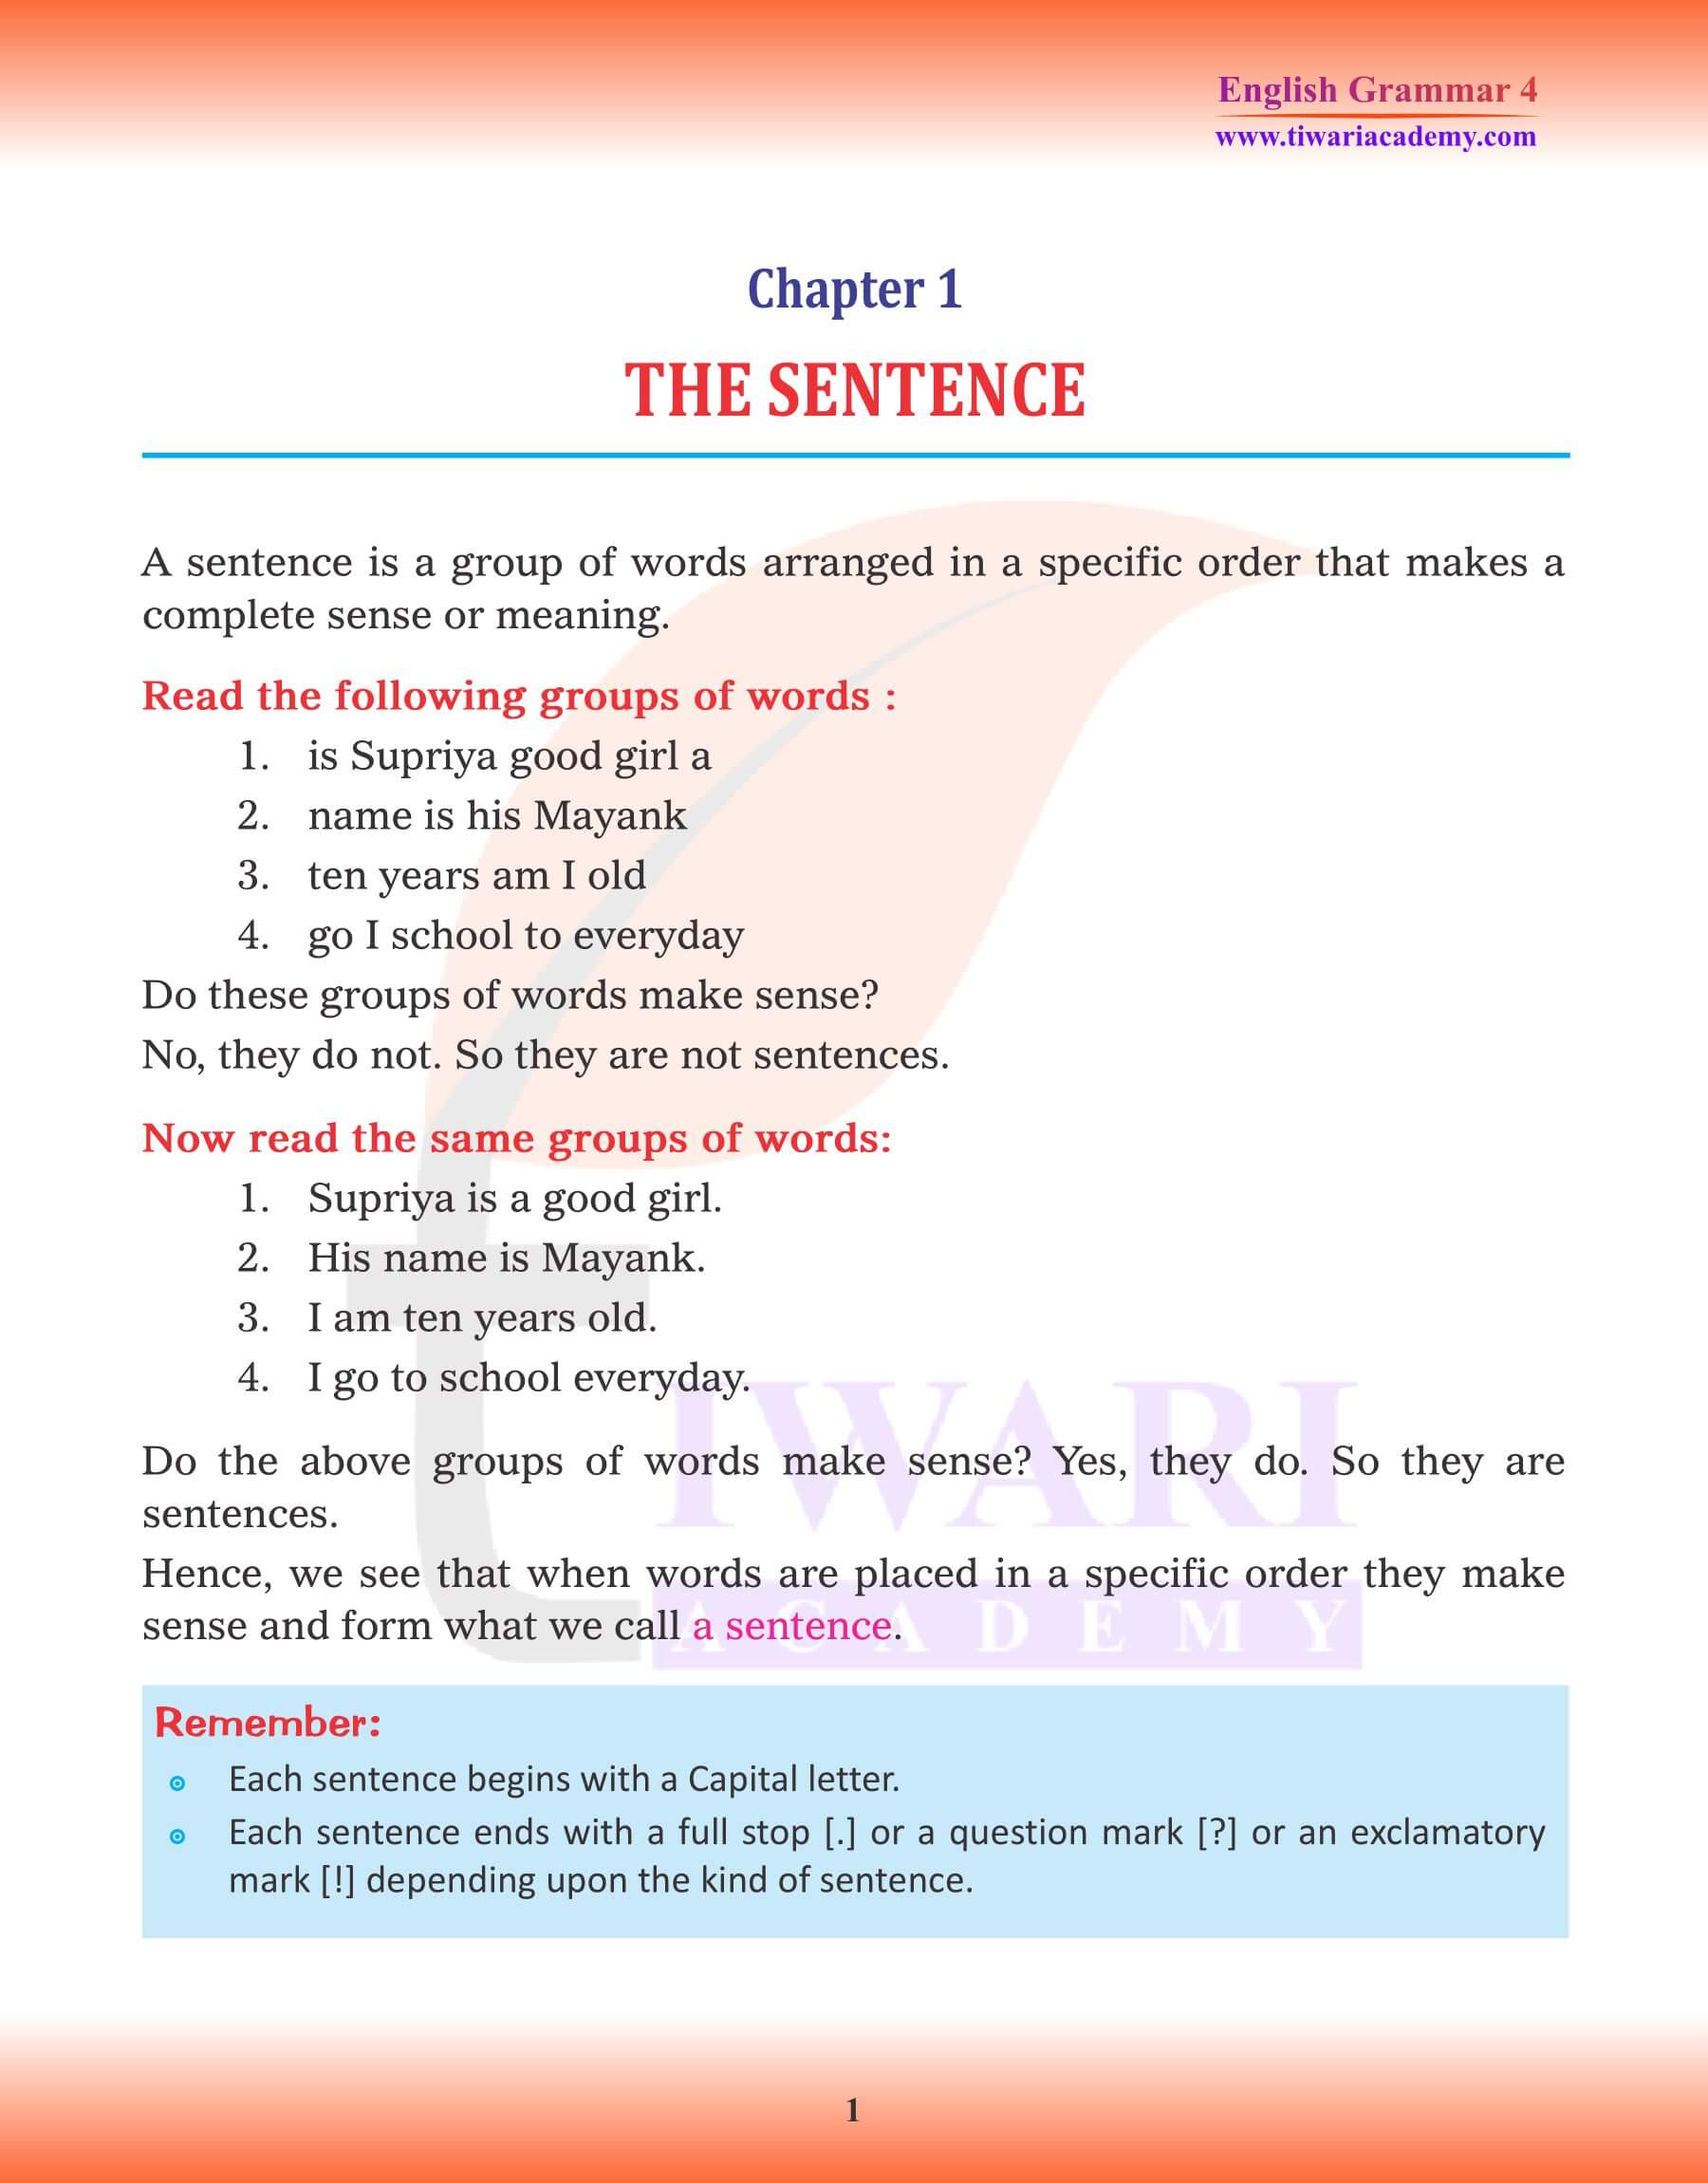 Class 4 English Grammar Chapter 1 The Sentence